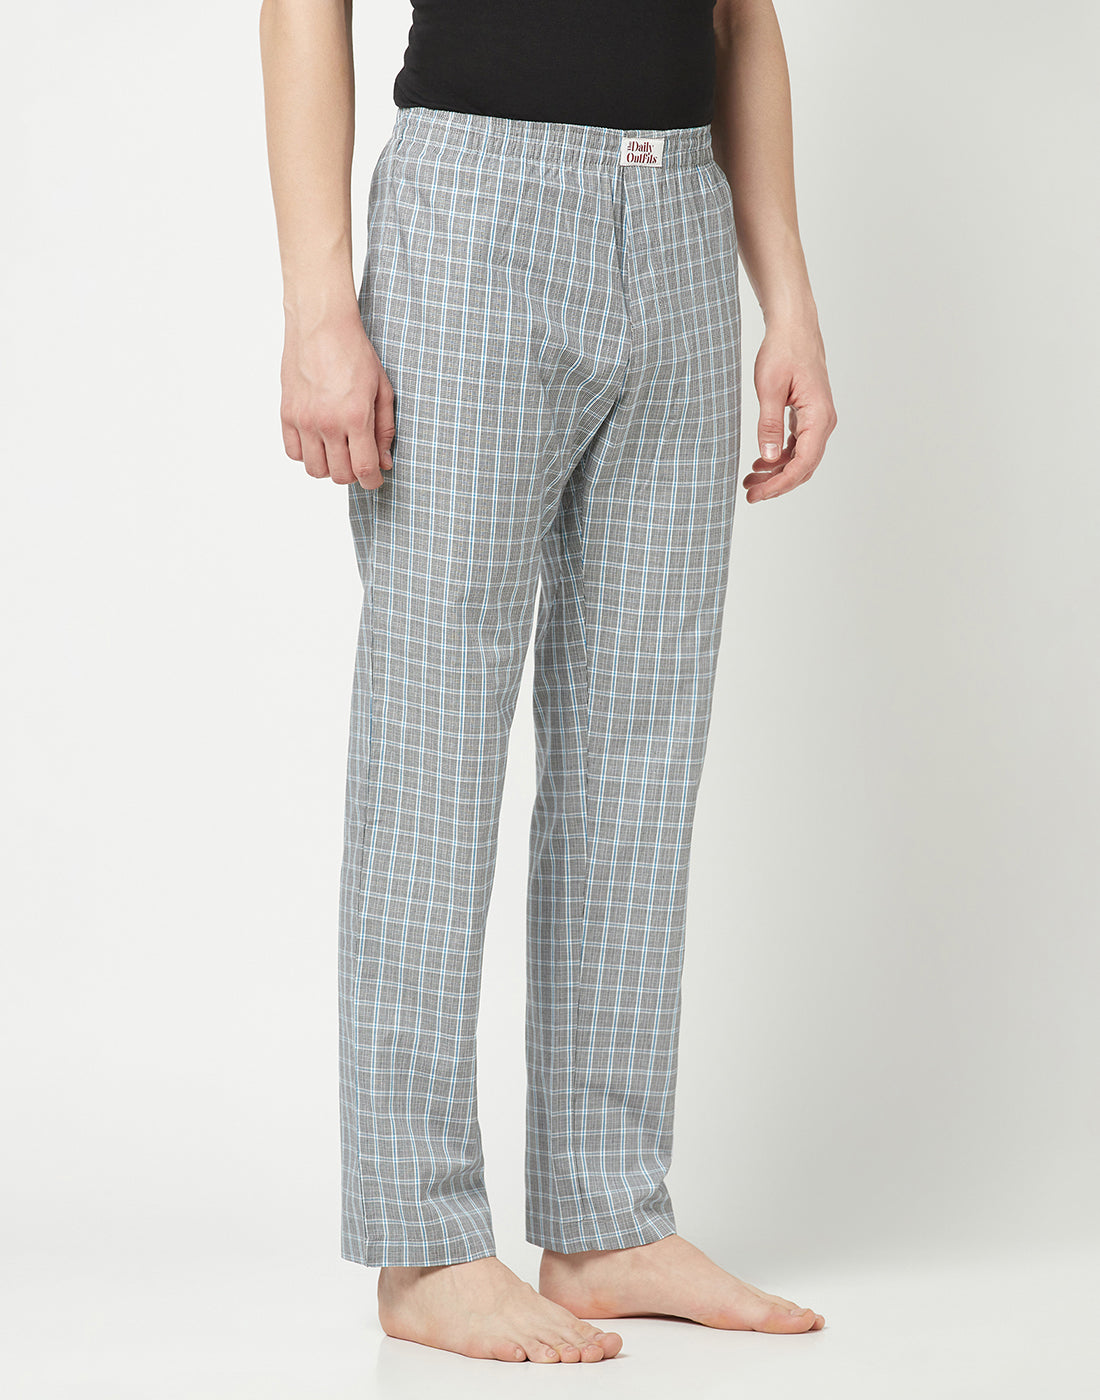 Dupplin Checked Cotton Woven Pyjamas